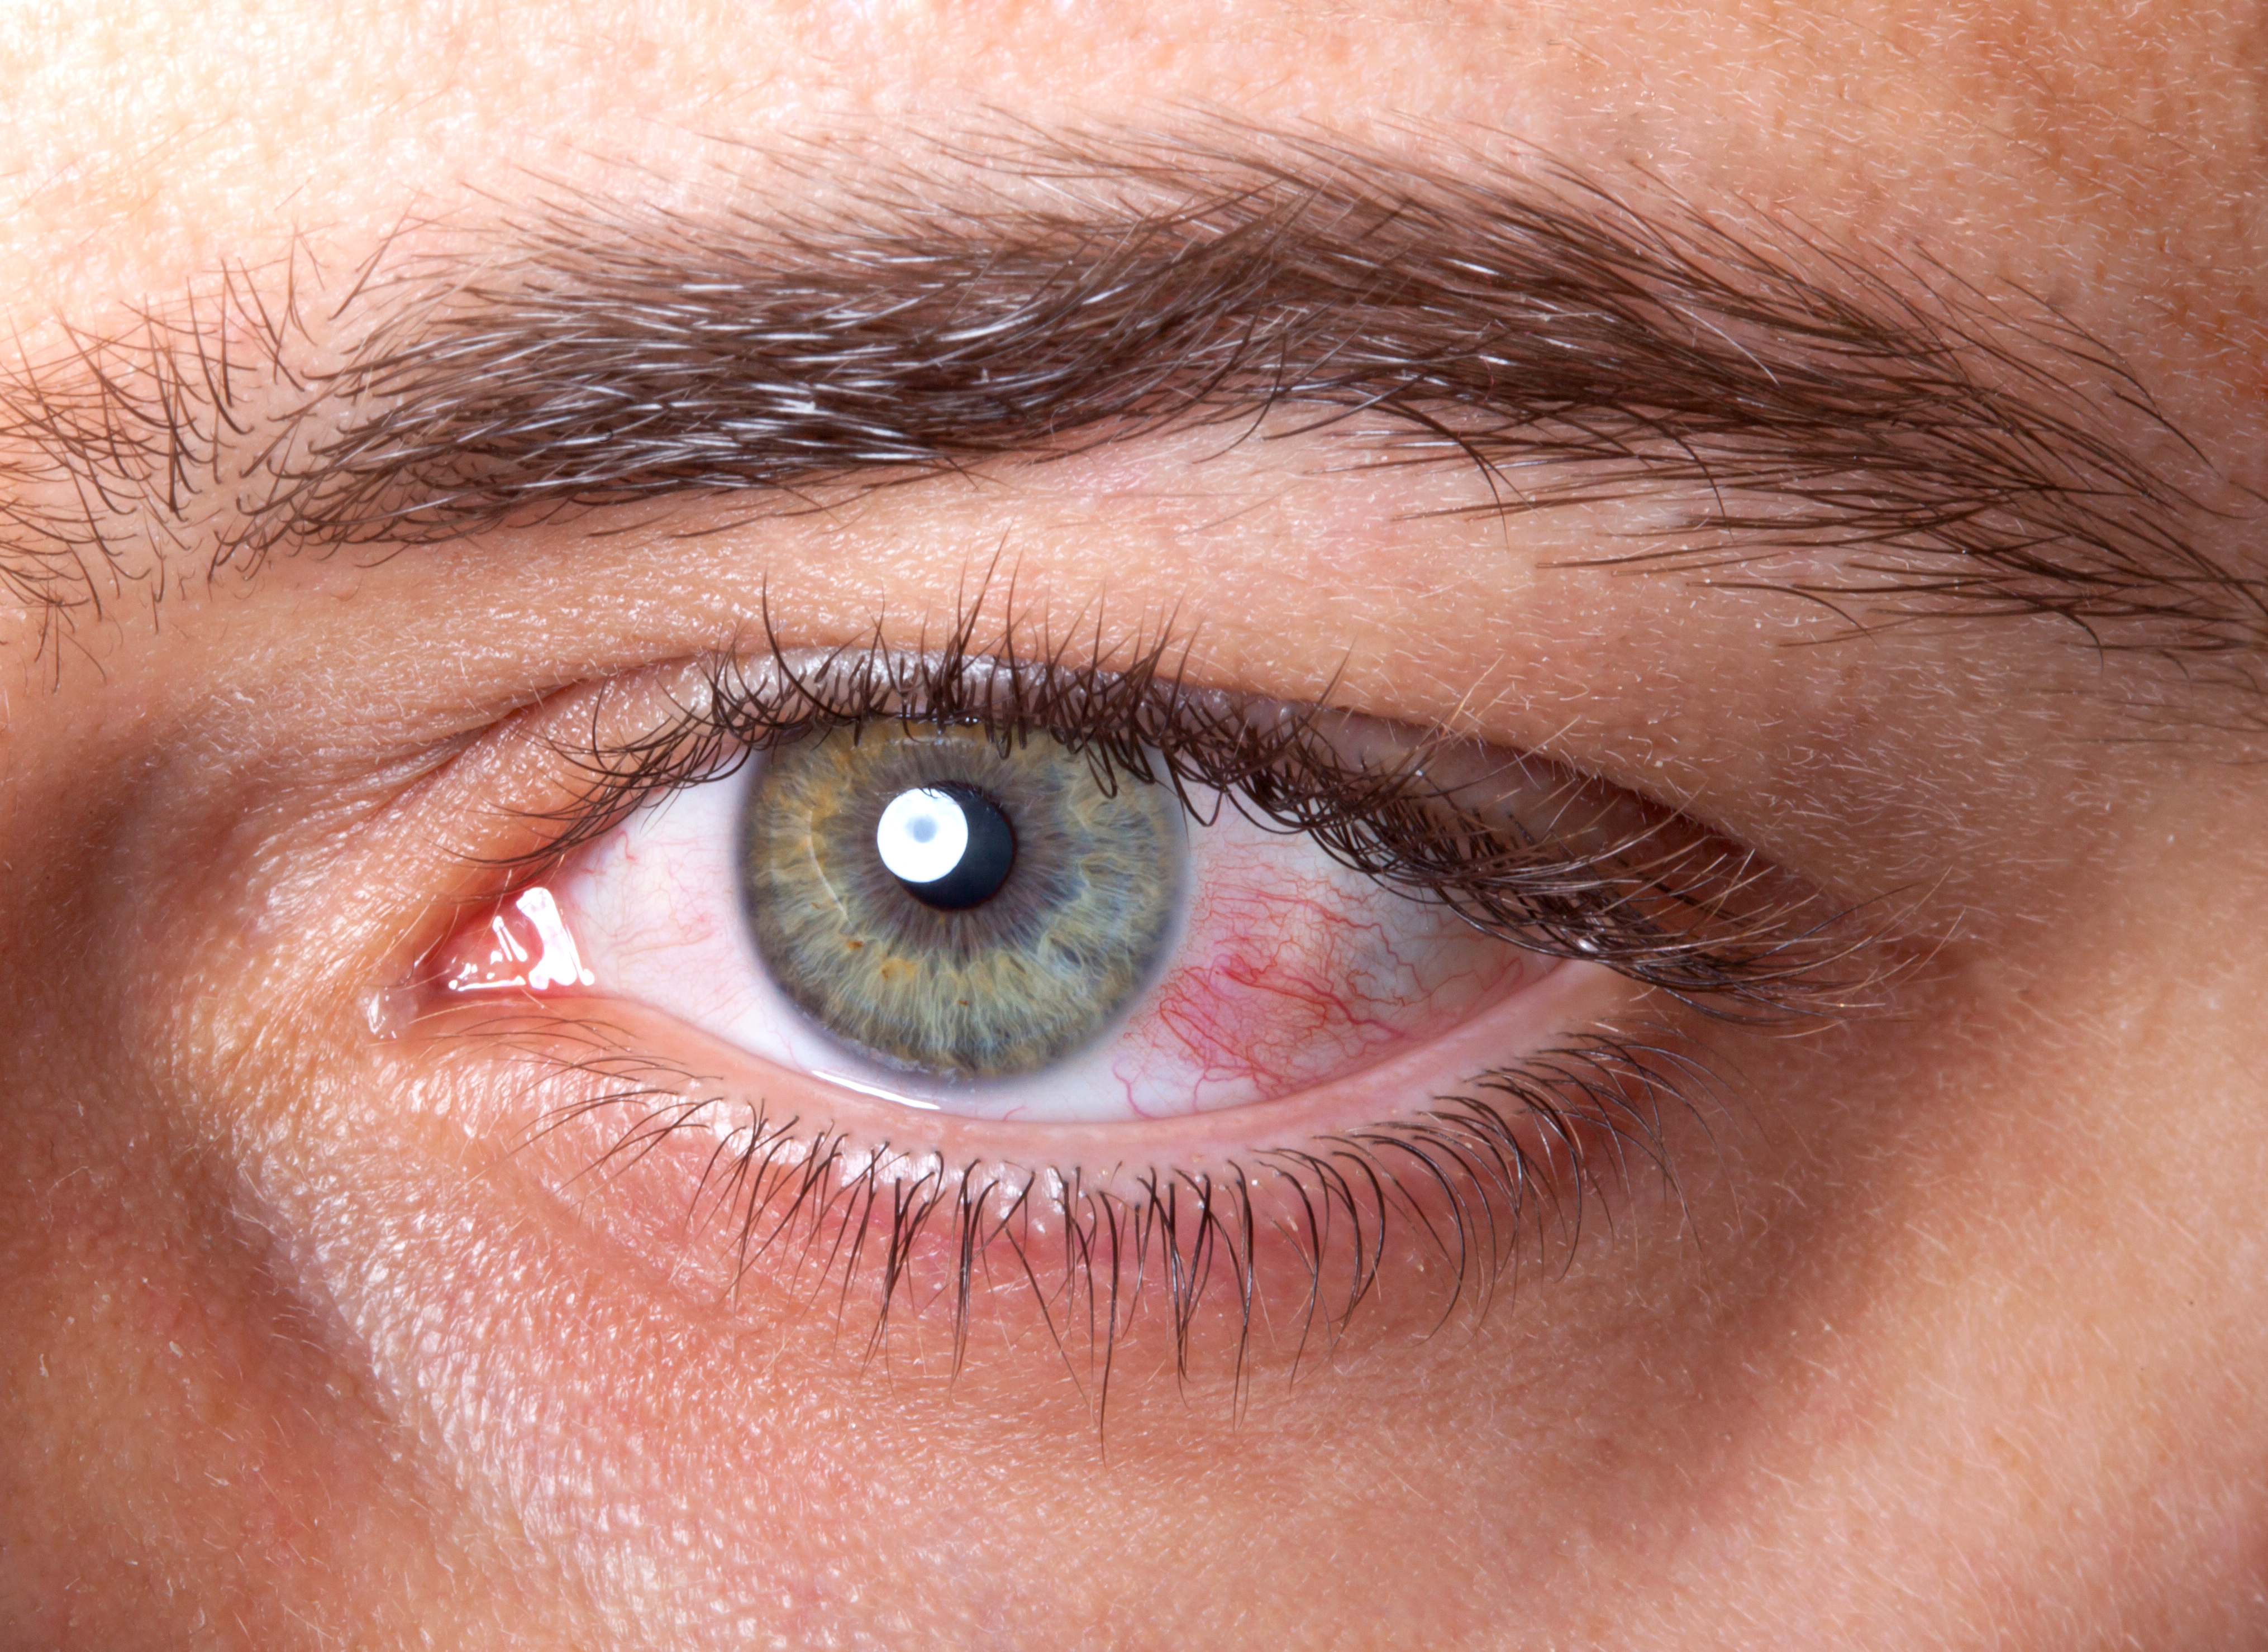 Olho seco e dor podem indicar contaminação pelo coronavírus